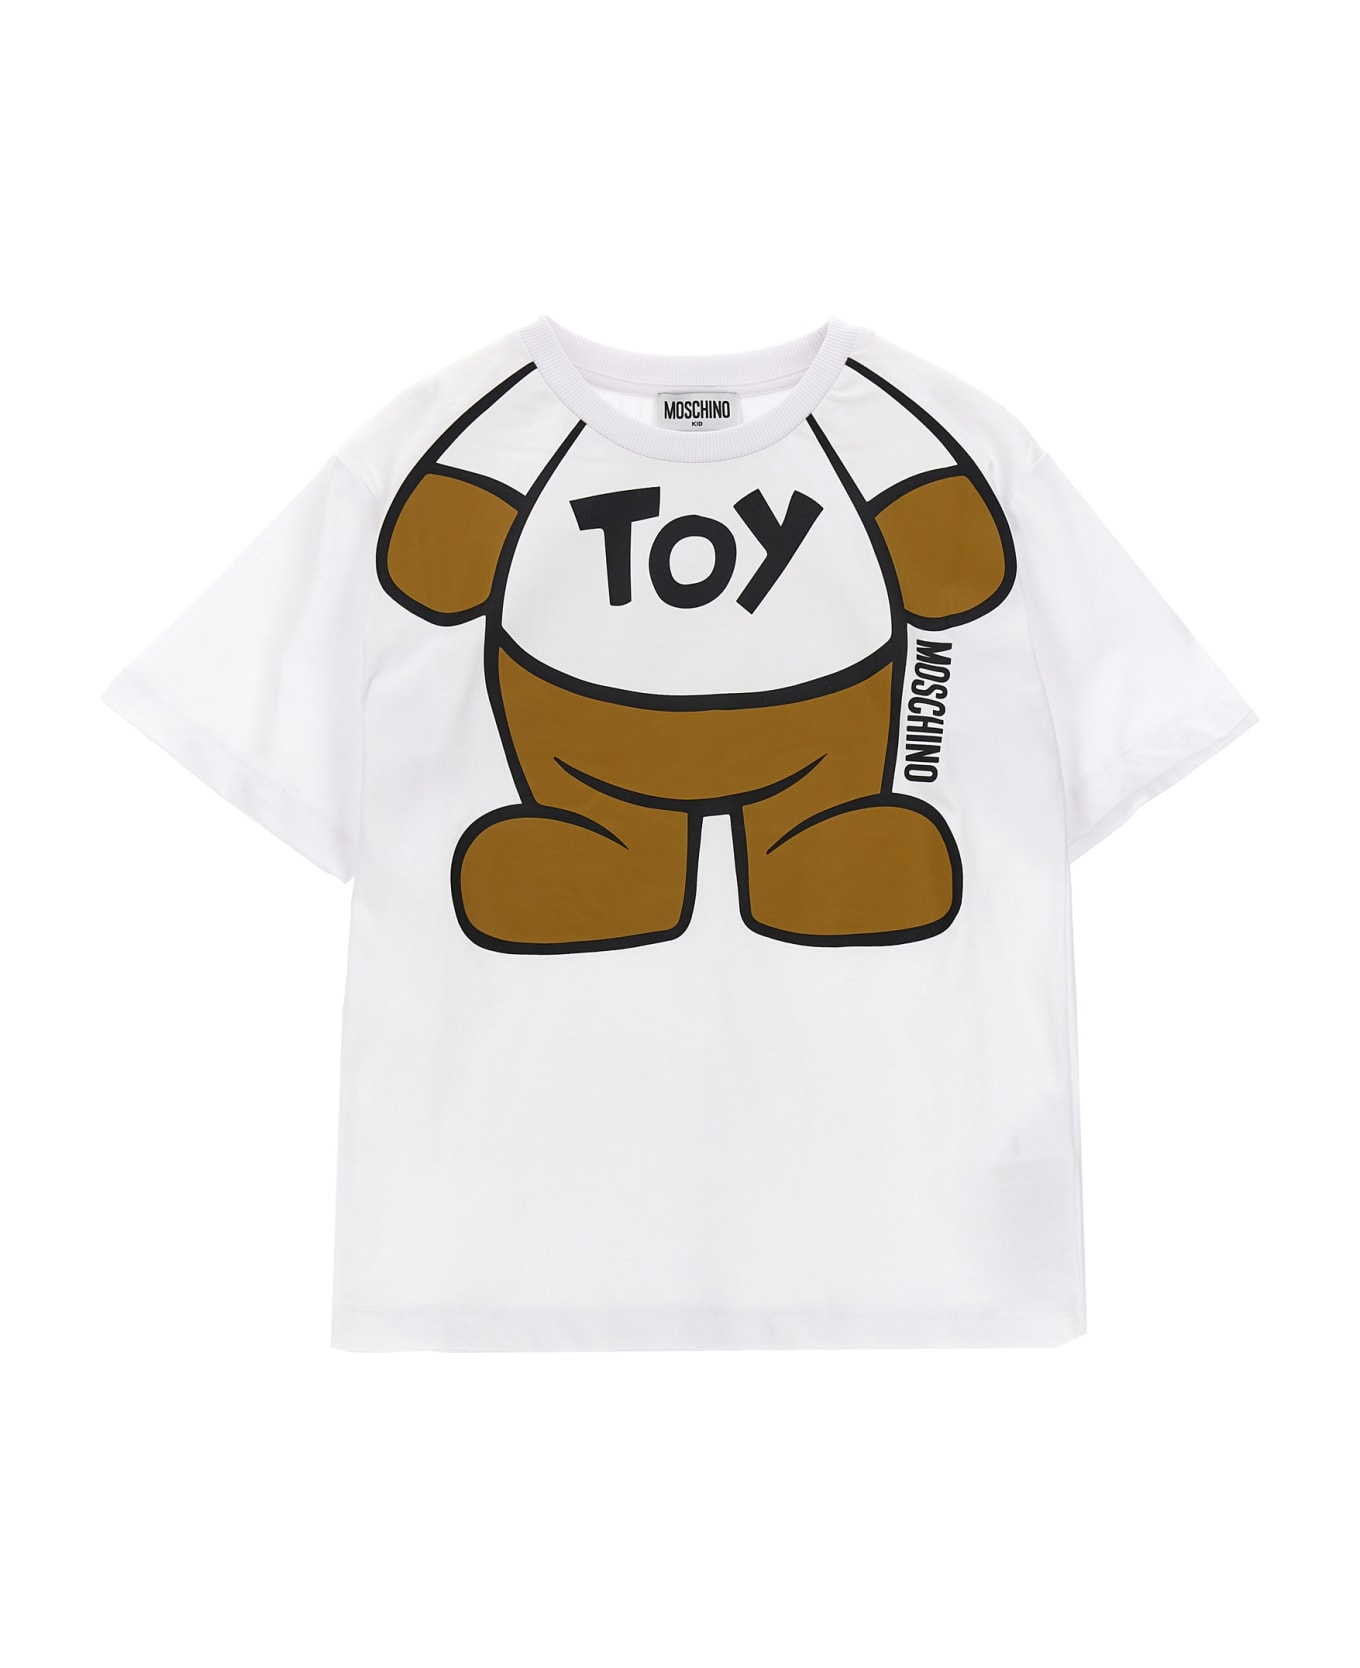 Moschino 'teddy' T-shirt - White